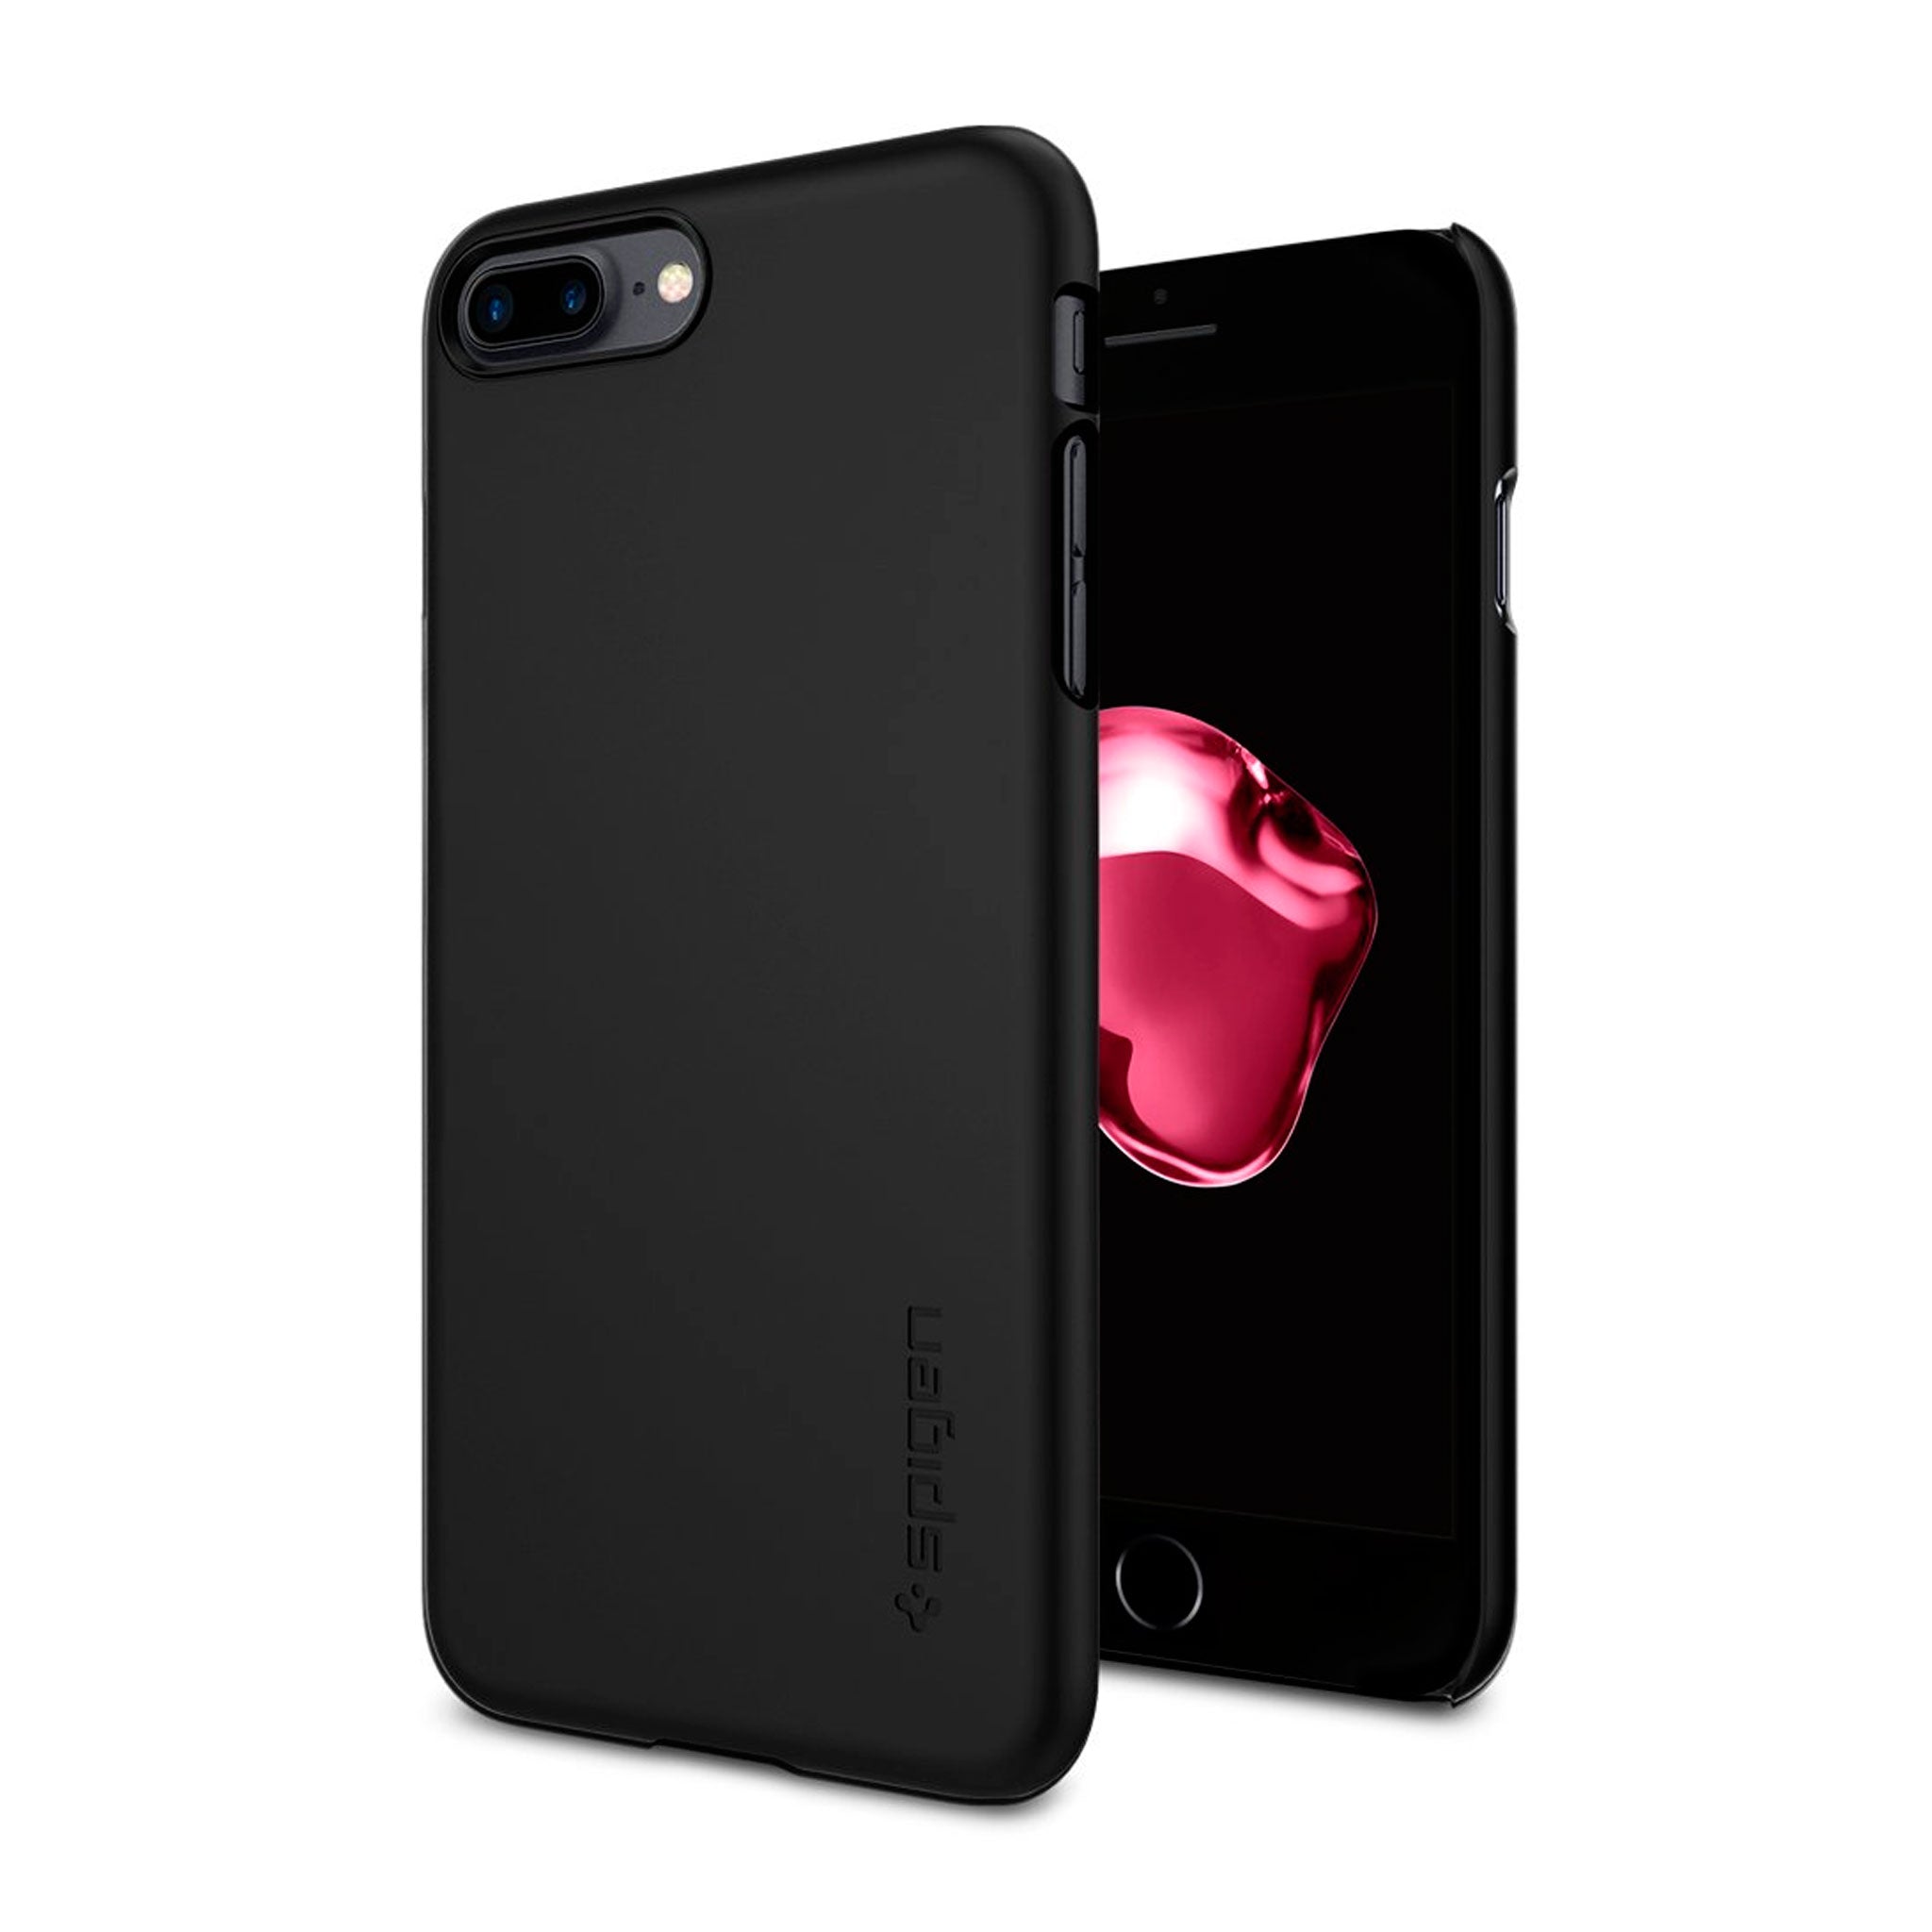 Apple - Spigen Thin Fit Case for iPhone for 7 Plus - Black